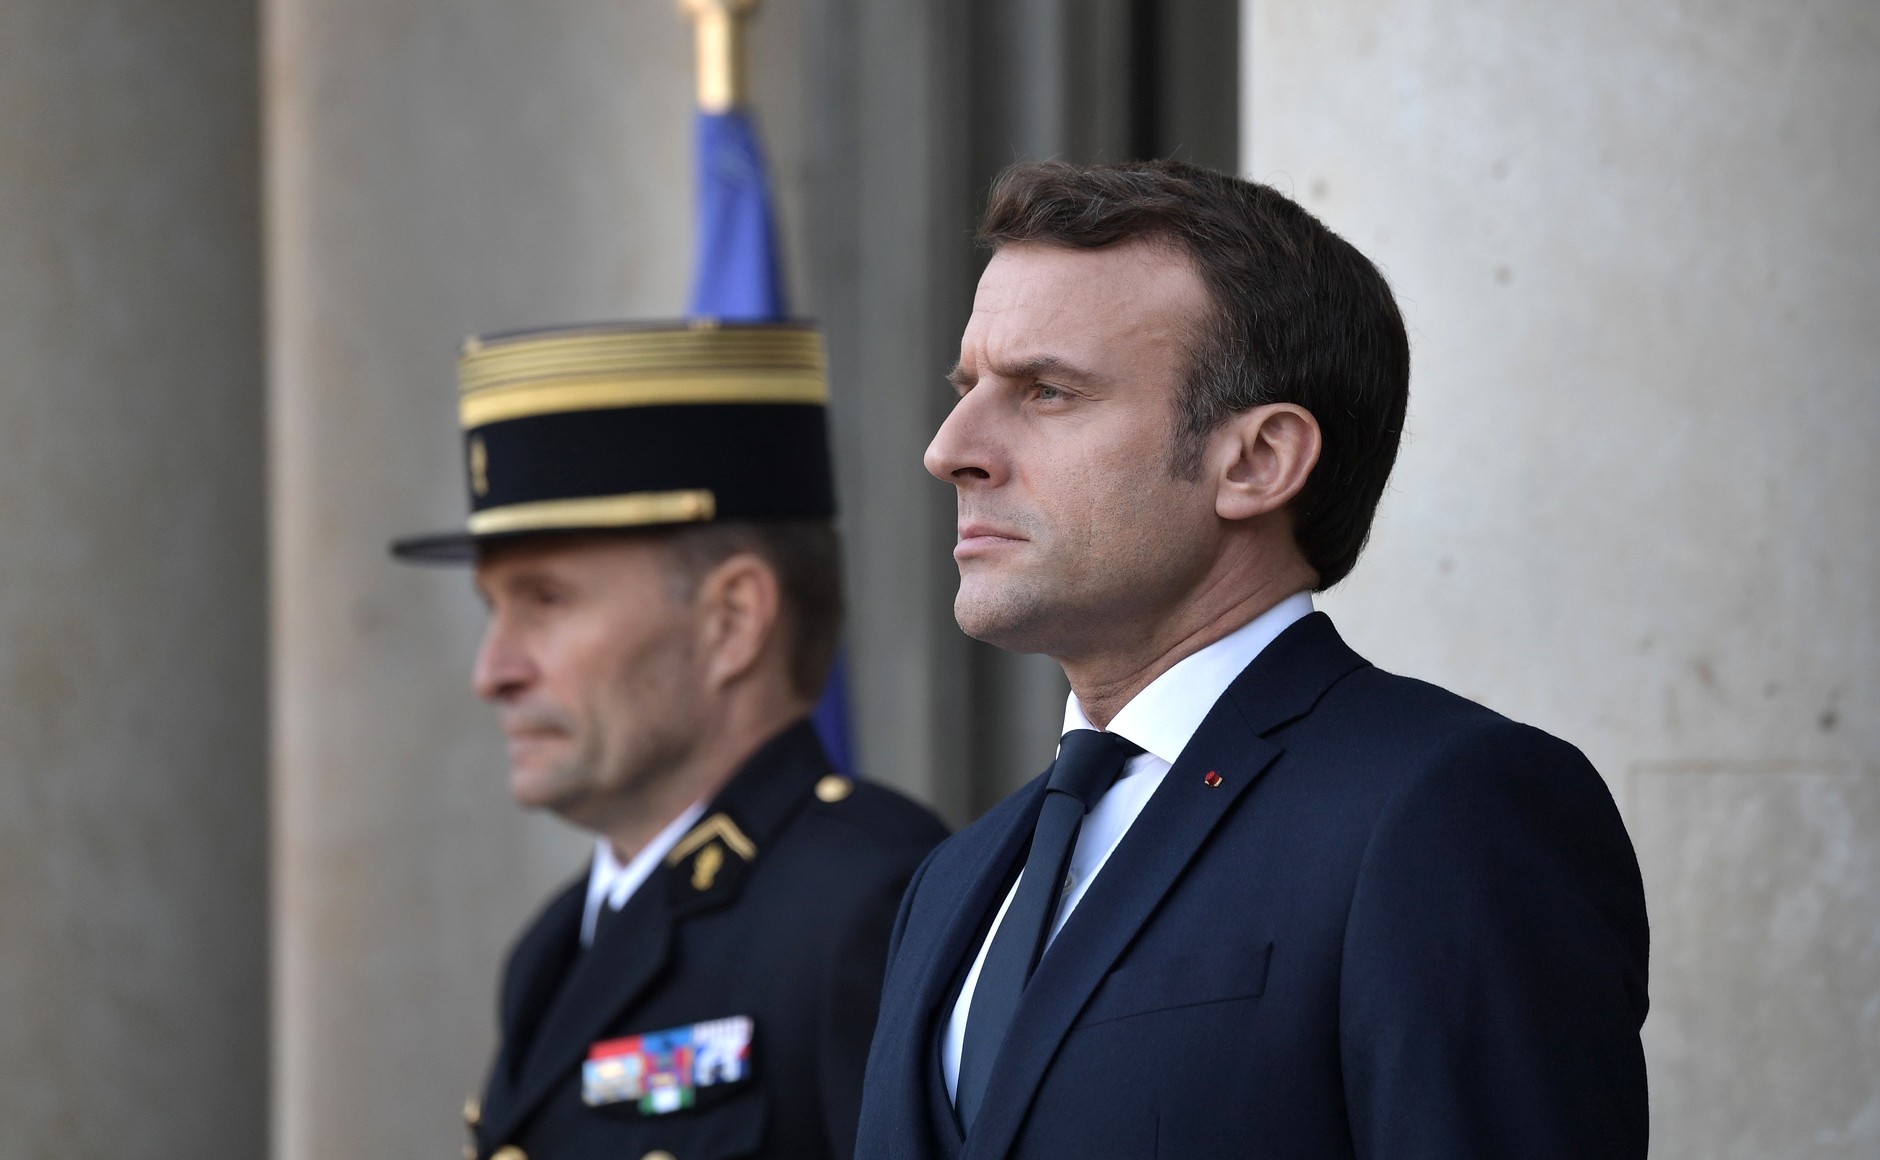 Emmanuel Macron reageert op het politiegeweld. Belgische militairen zullen niet langer te zien zijn op straat. ©Pixabay